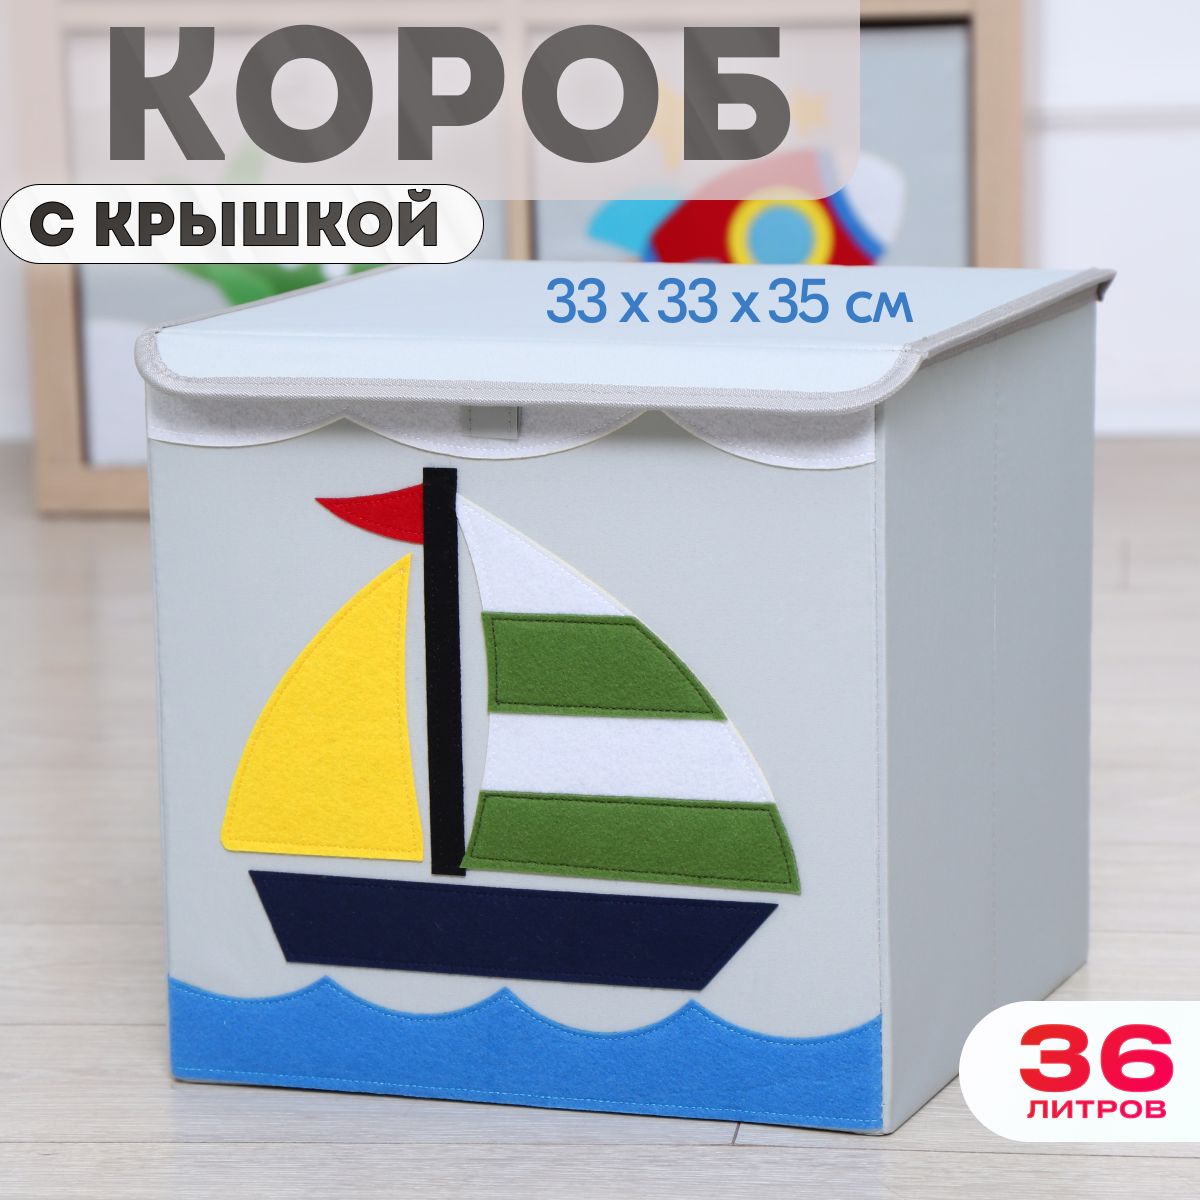 Короб с крышкой контейнер для игрушек HappySava Кораблик объем 36 литров